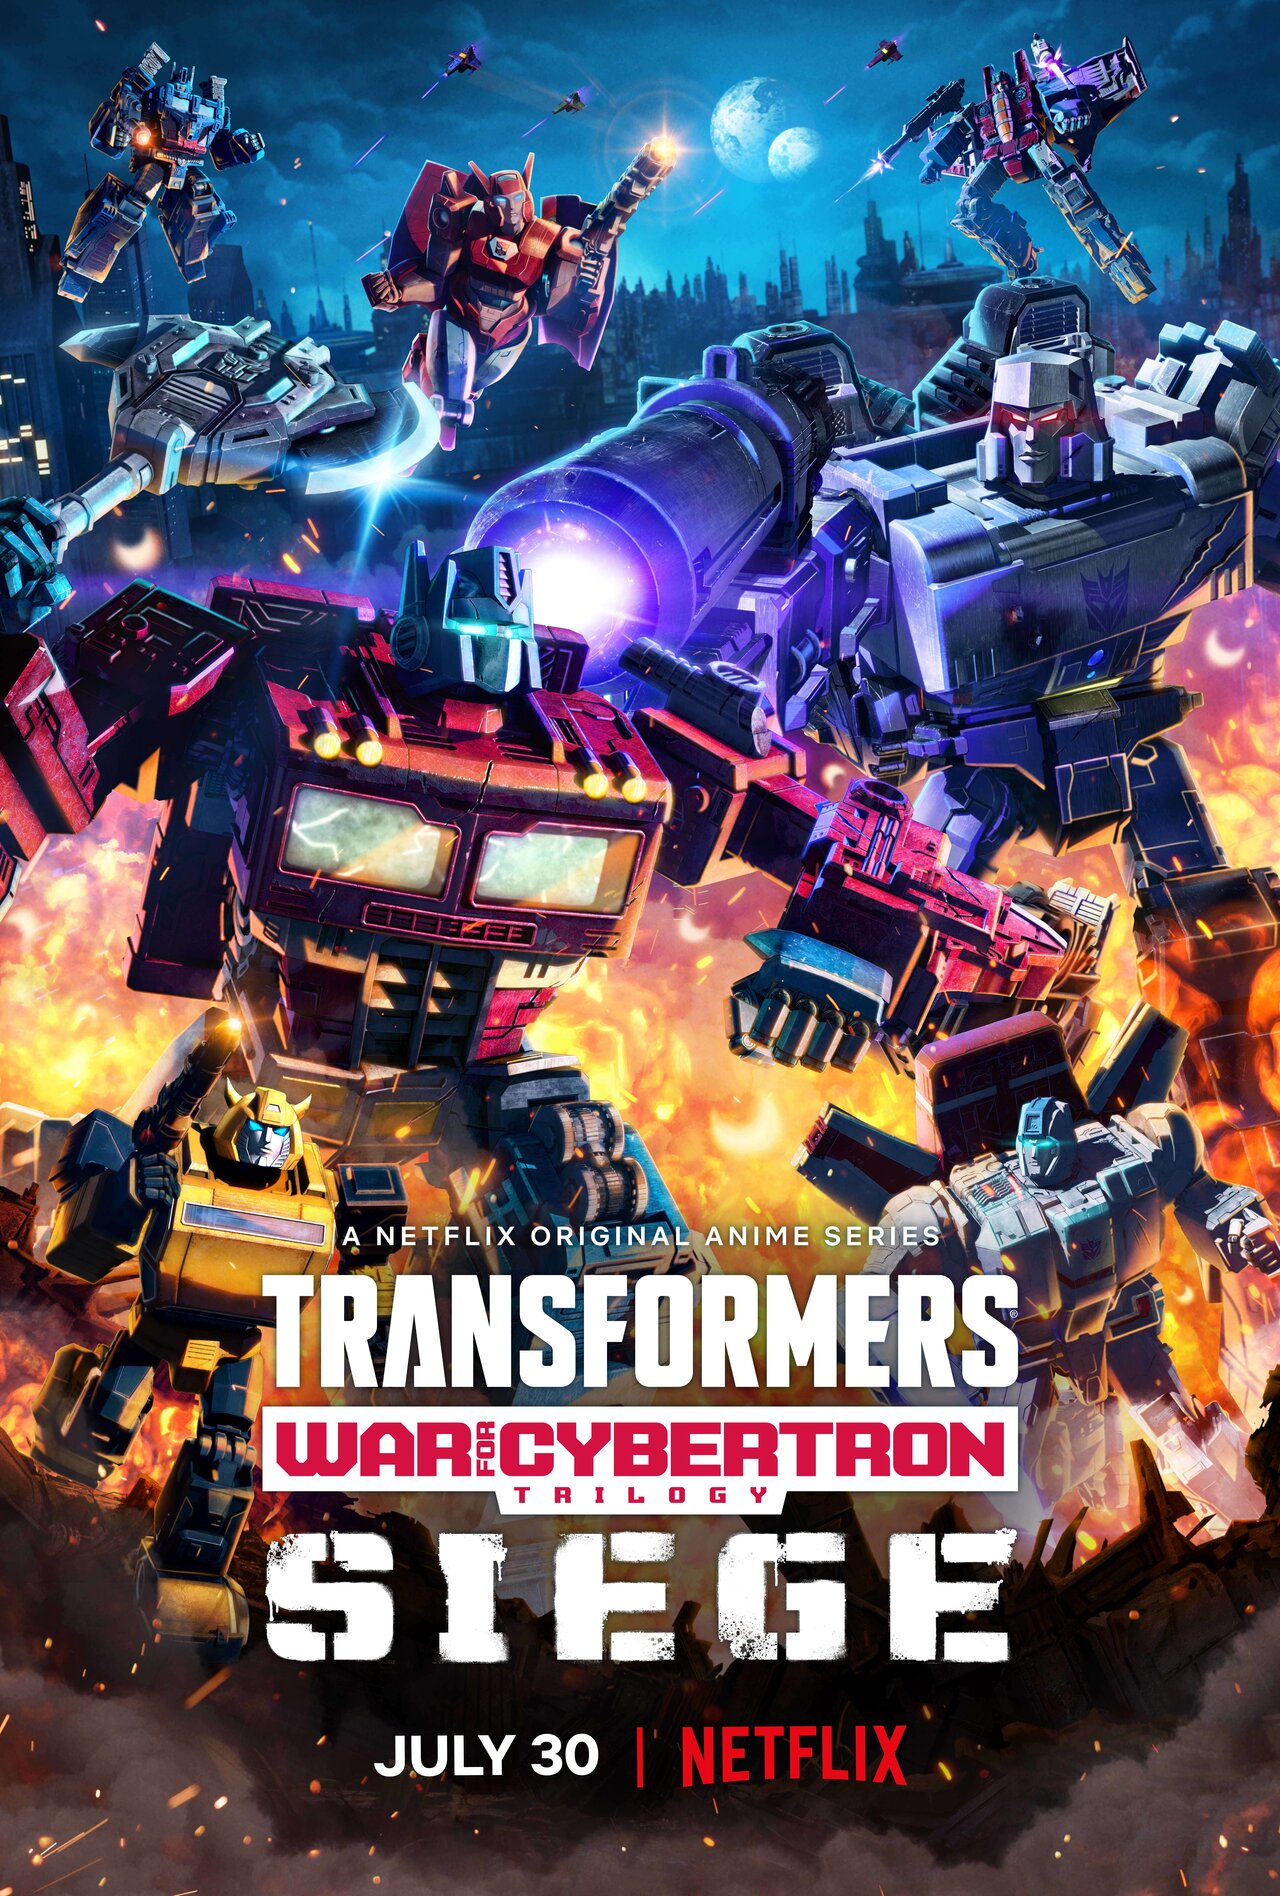 Teaser confirma lançamento de novo trailer de 'Transformers: O